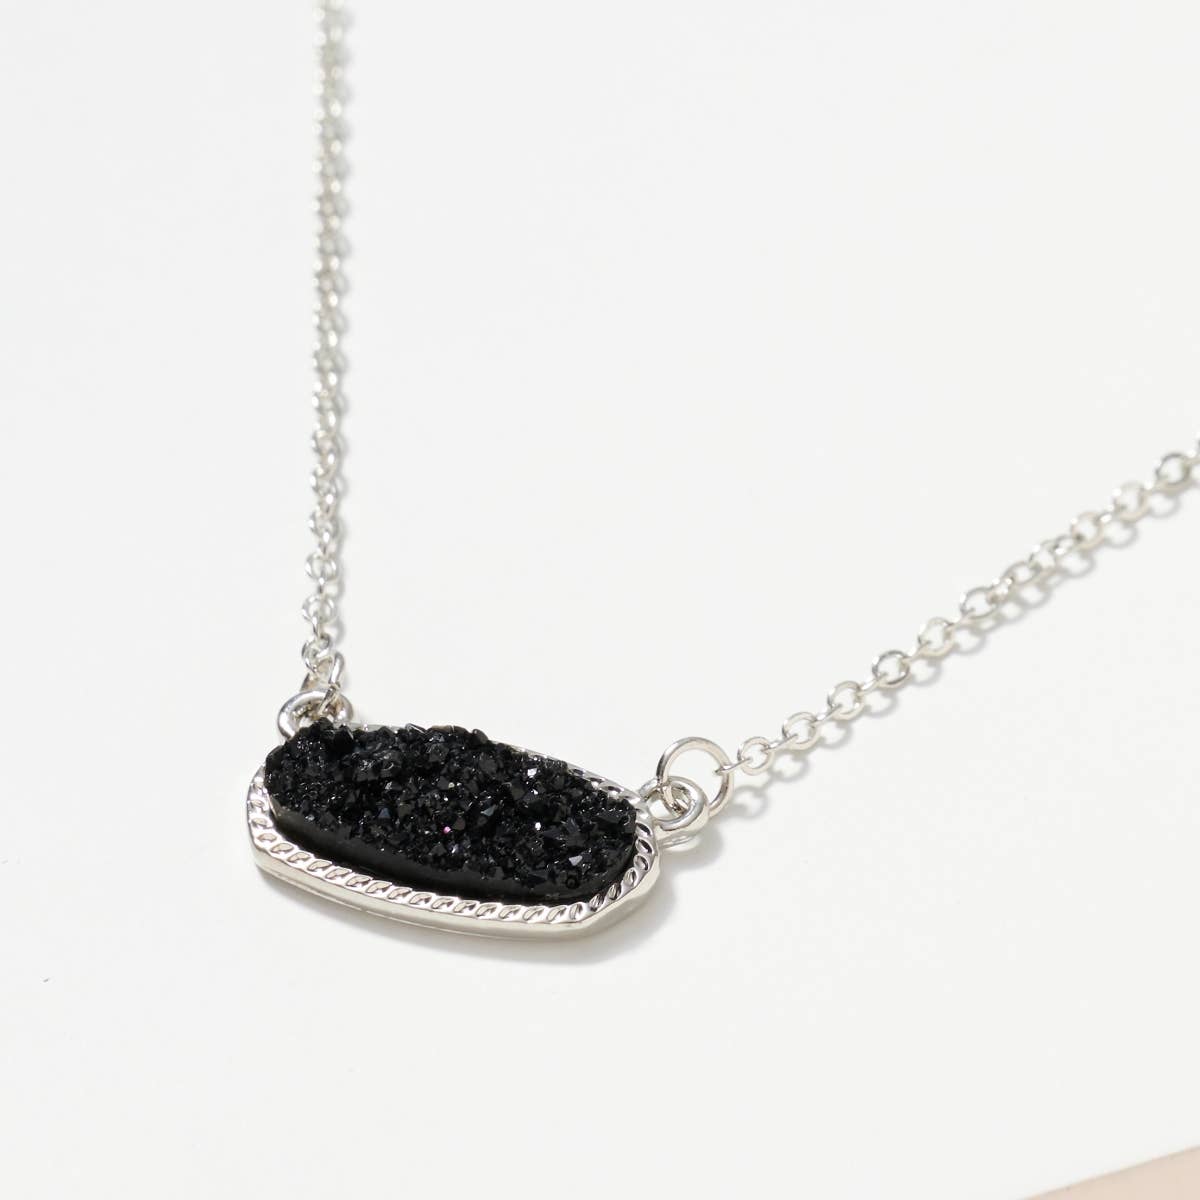 Oval Druzy Necklace, Black